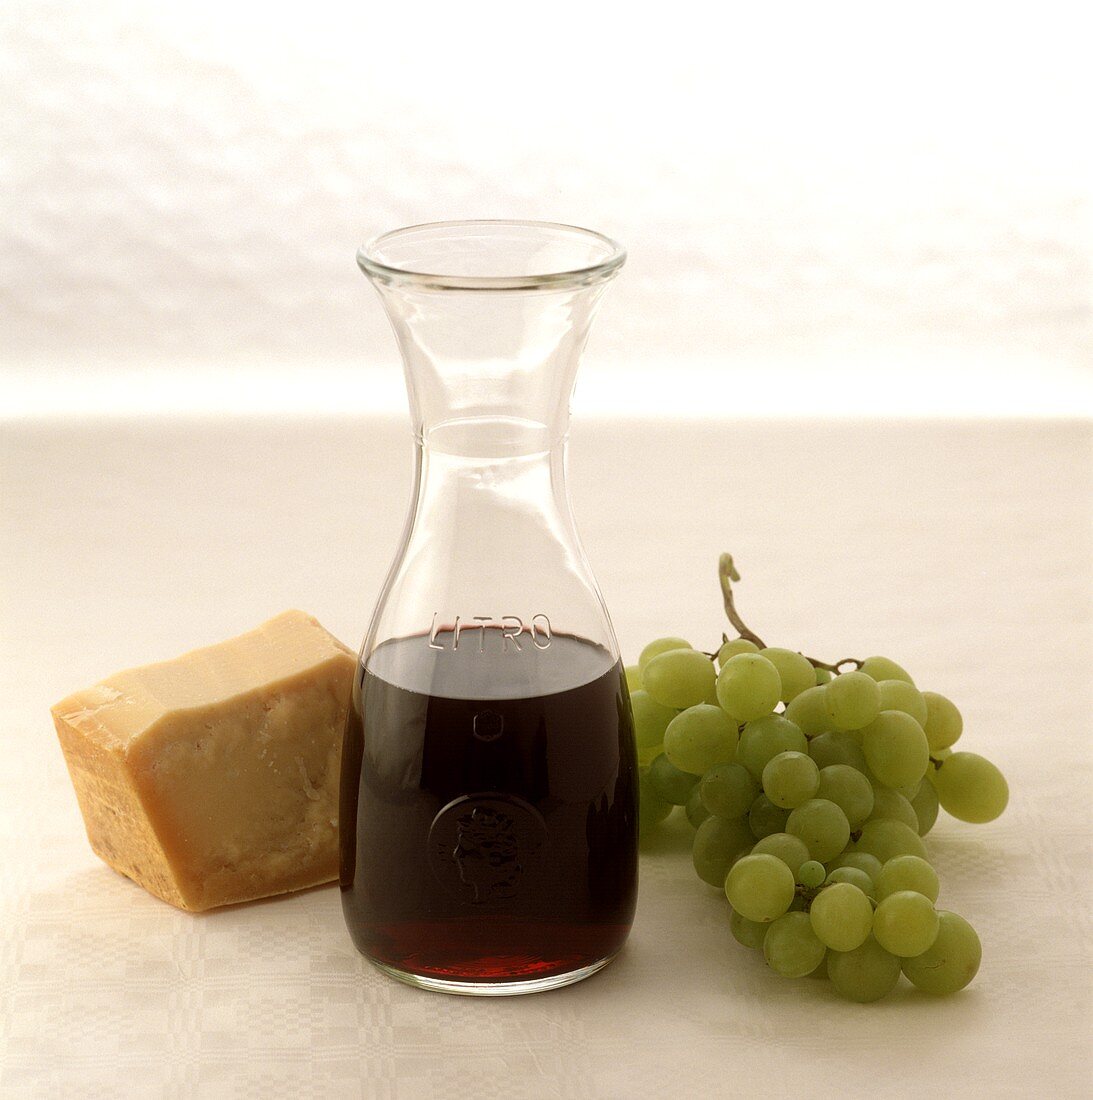 Weinkaraffe mit Rotwein, daneben Parmesan und grüne Trauben